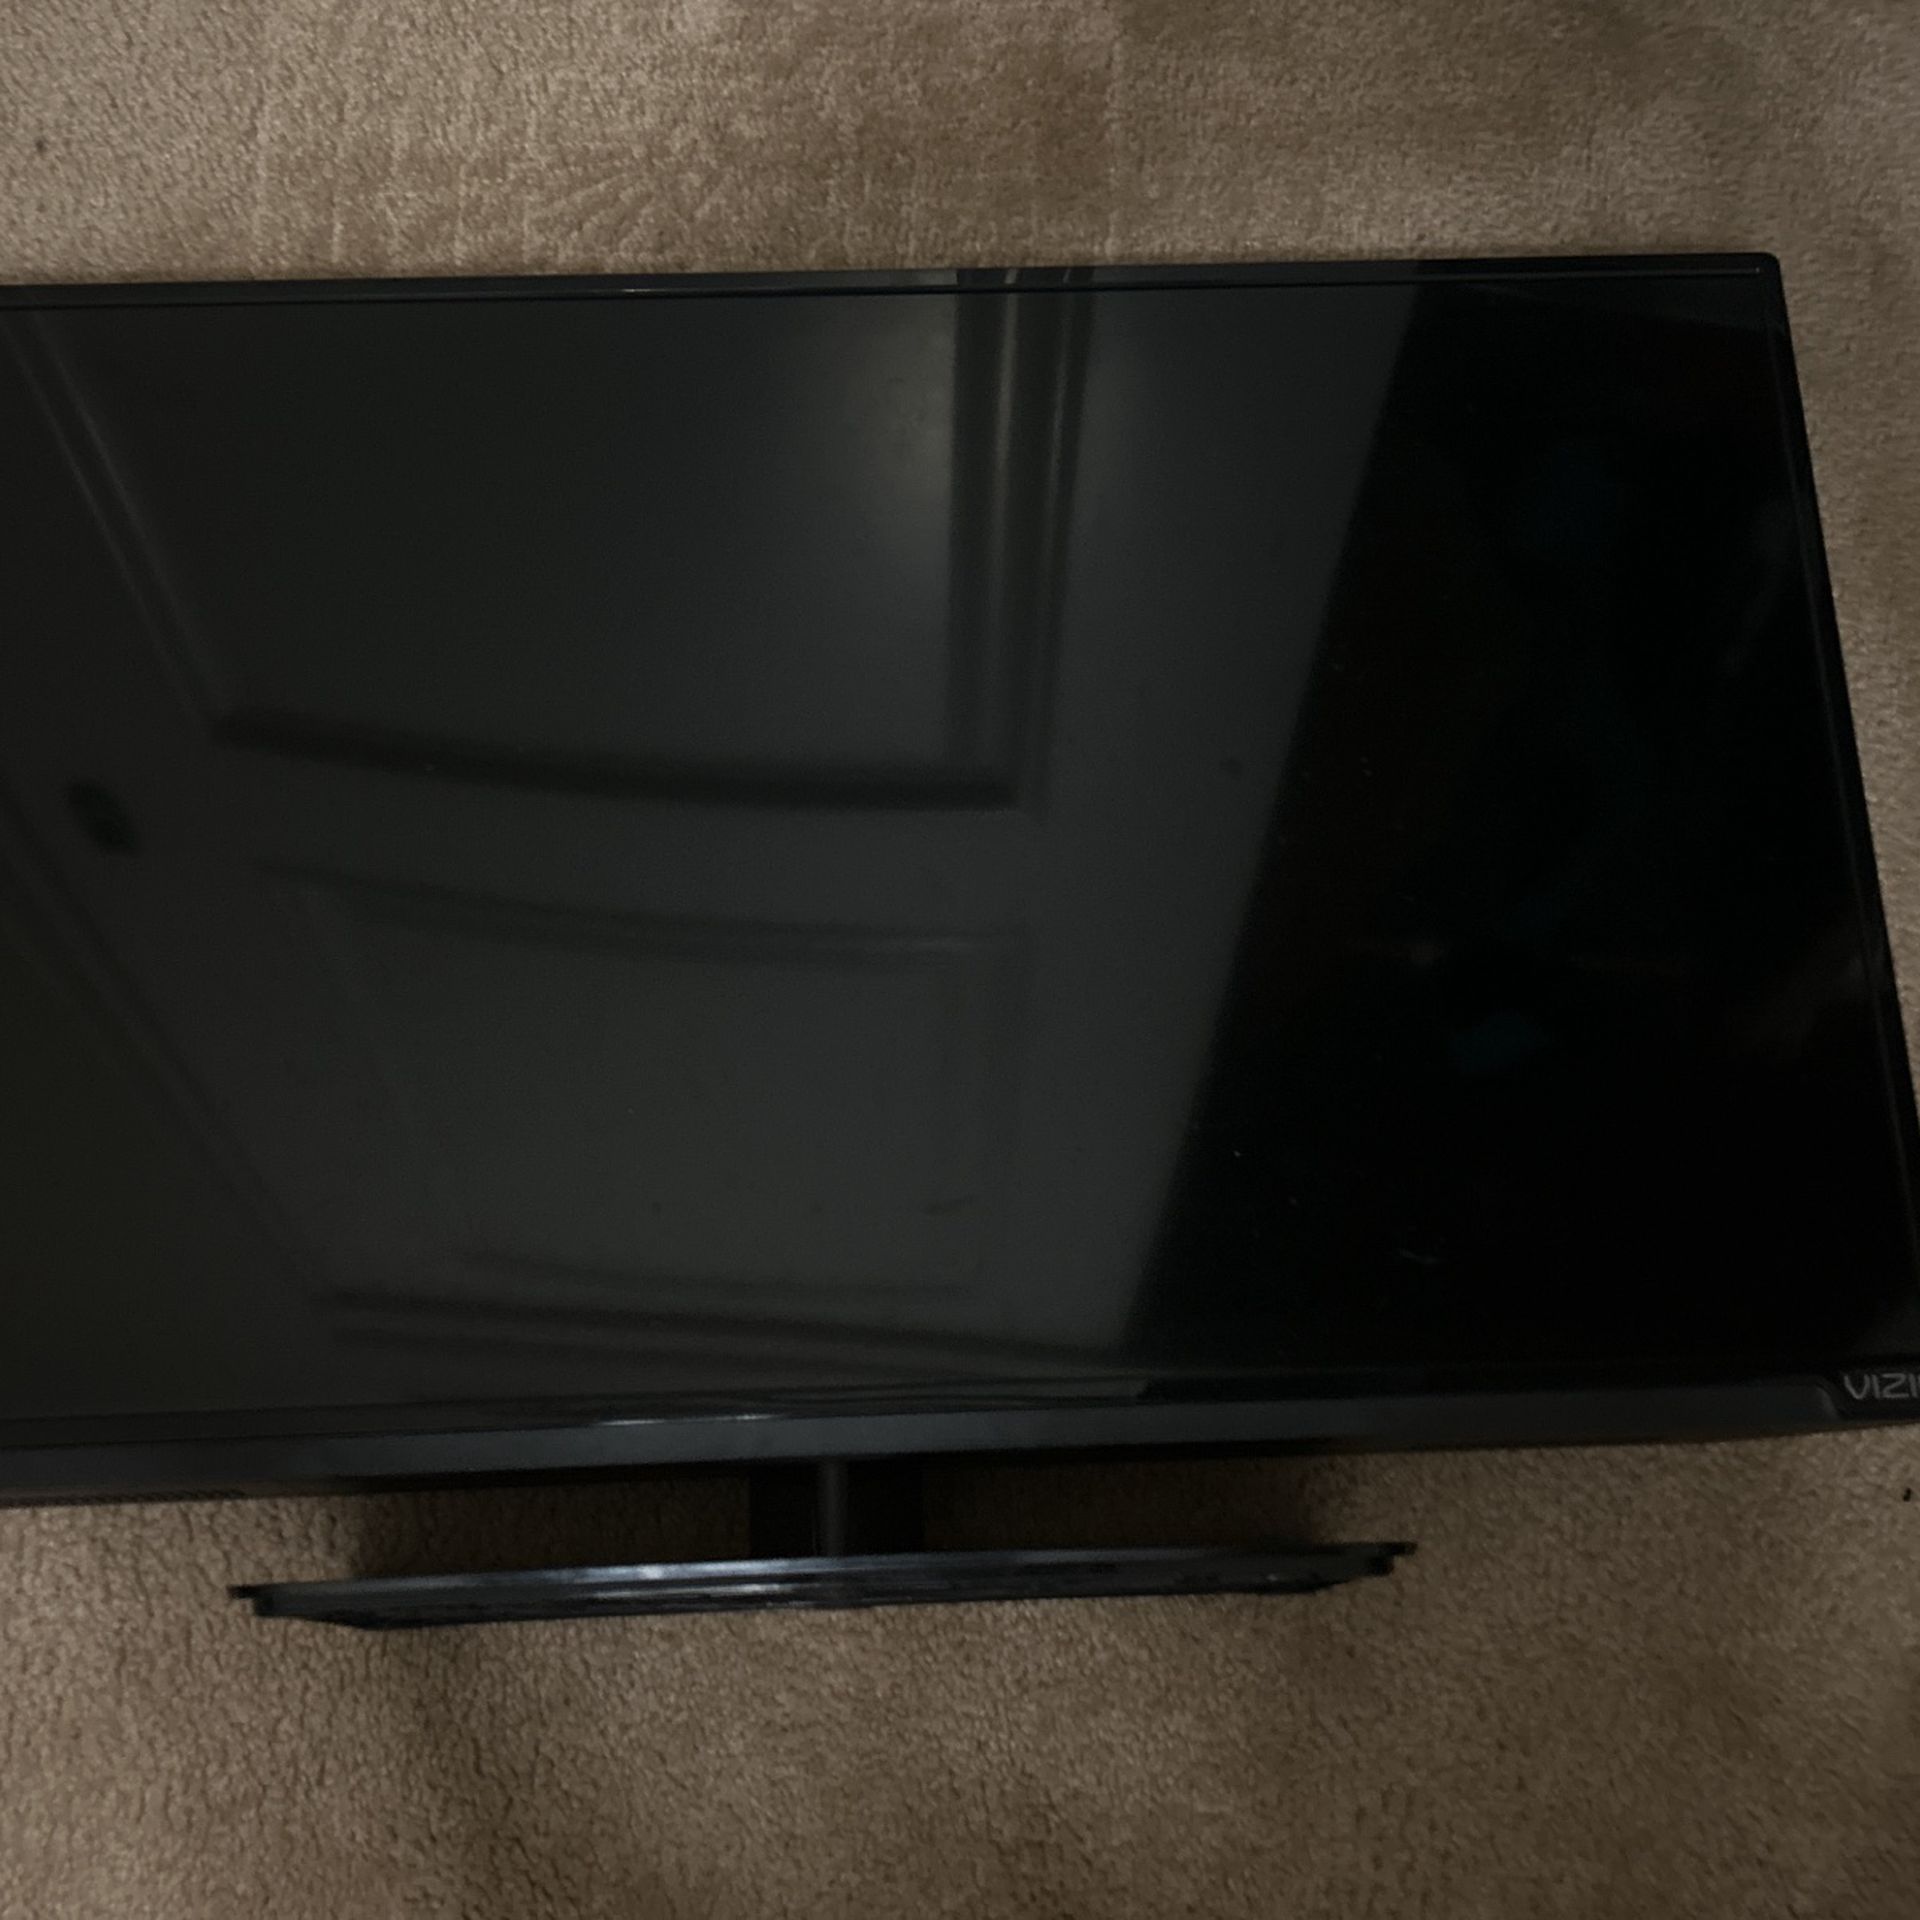 Vizio TV 32-inch